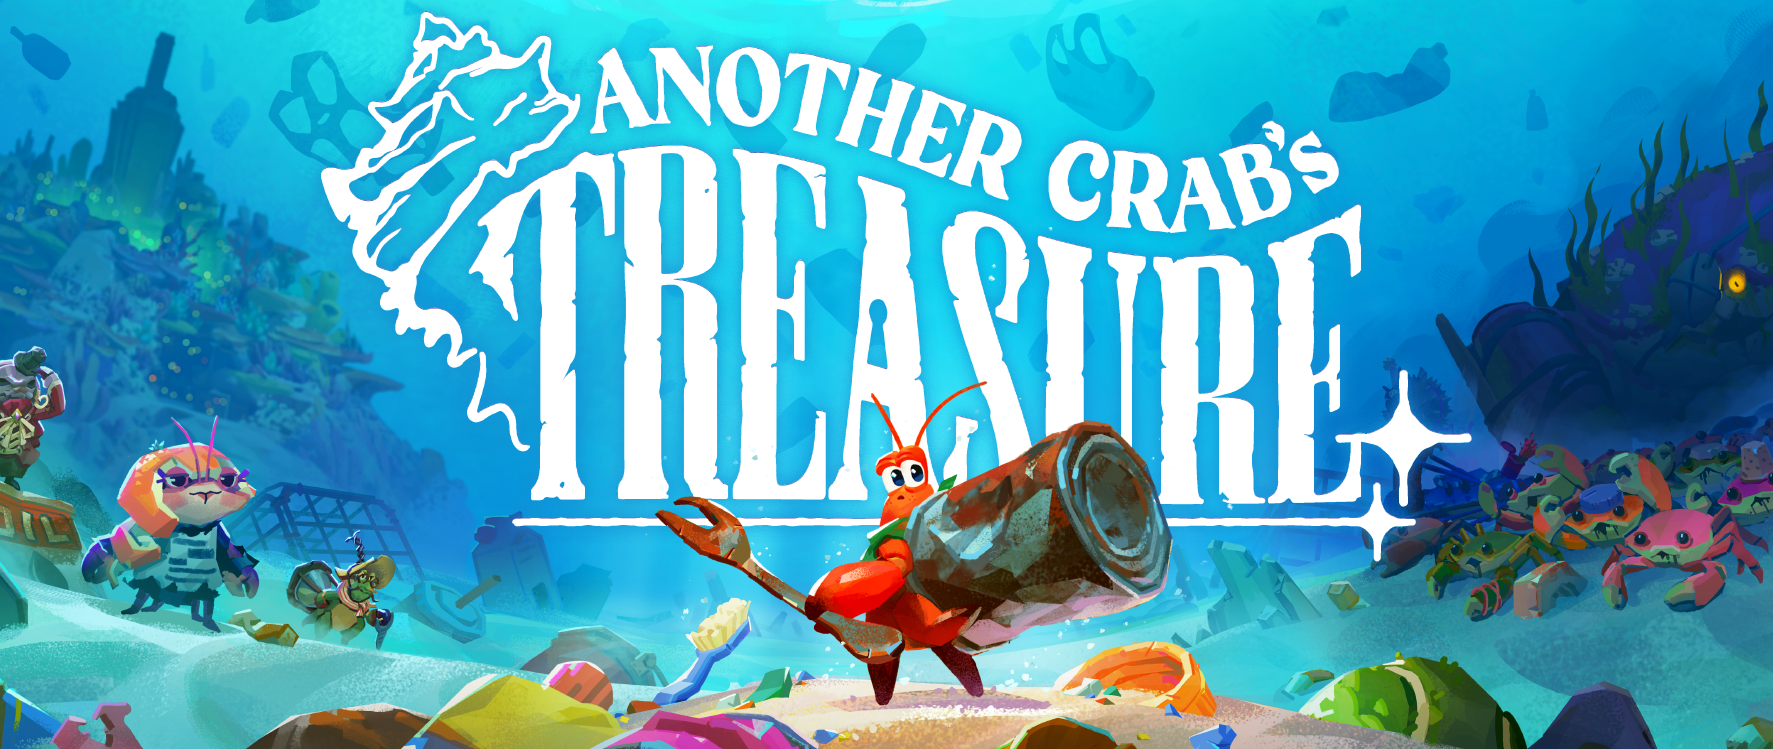 Another Crabs Treasure - №9 трёх боссов на ремни!